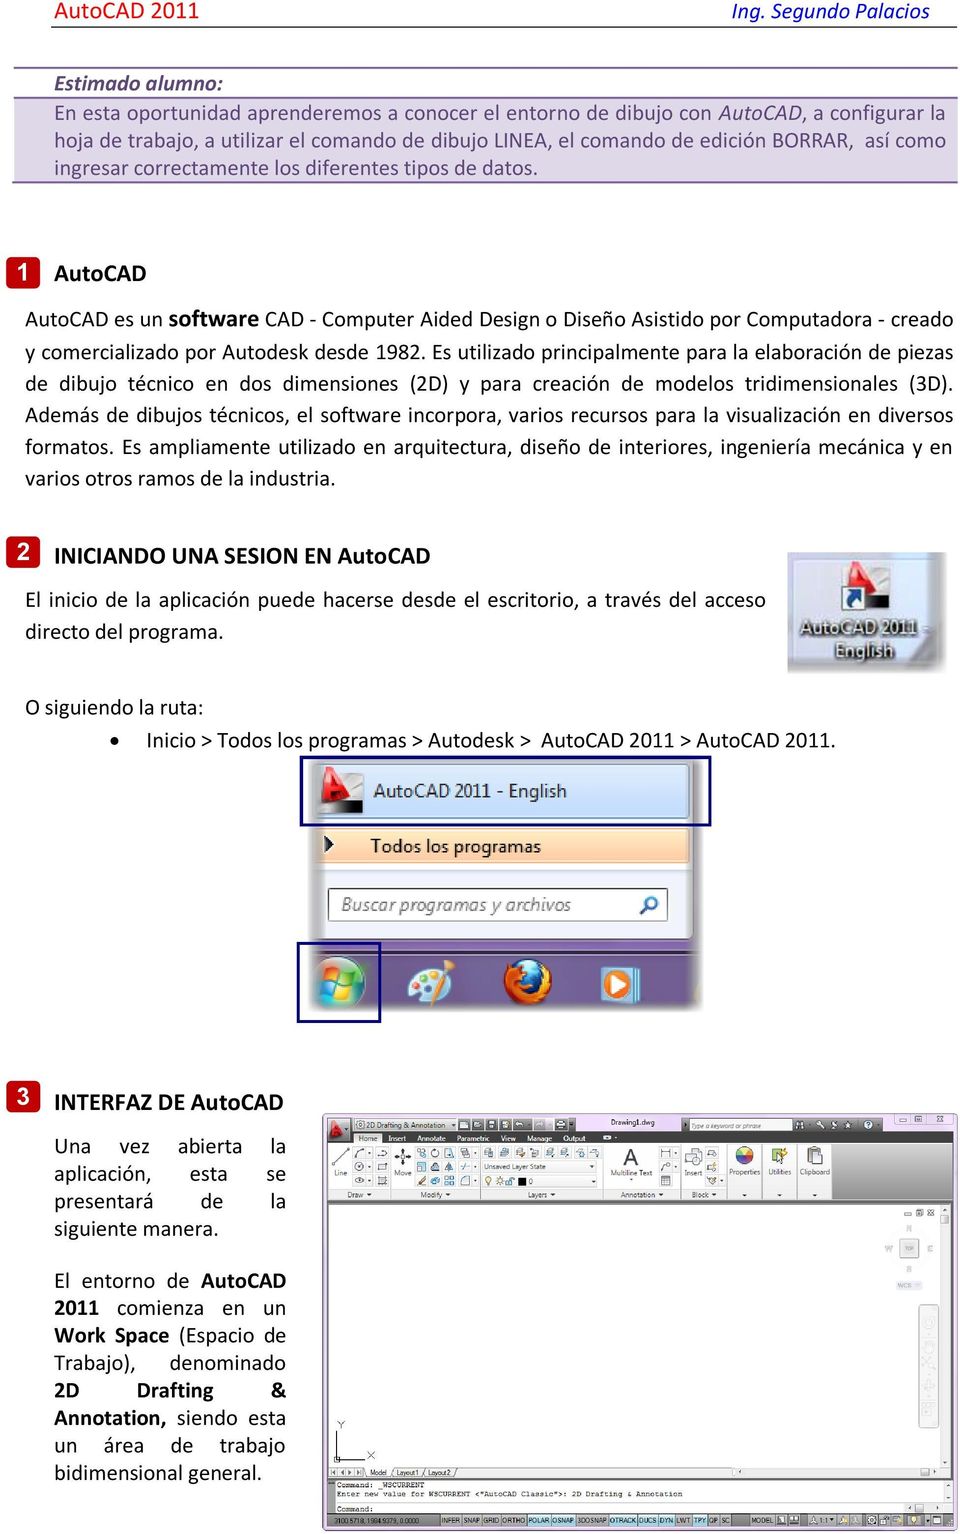 1 AutoCAD AutoCAD es un software CAD - Computer Aided Design o Diseño Asistido por Computadora - creado y comercializado por Autodesk desde 1982.